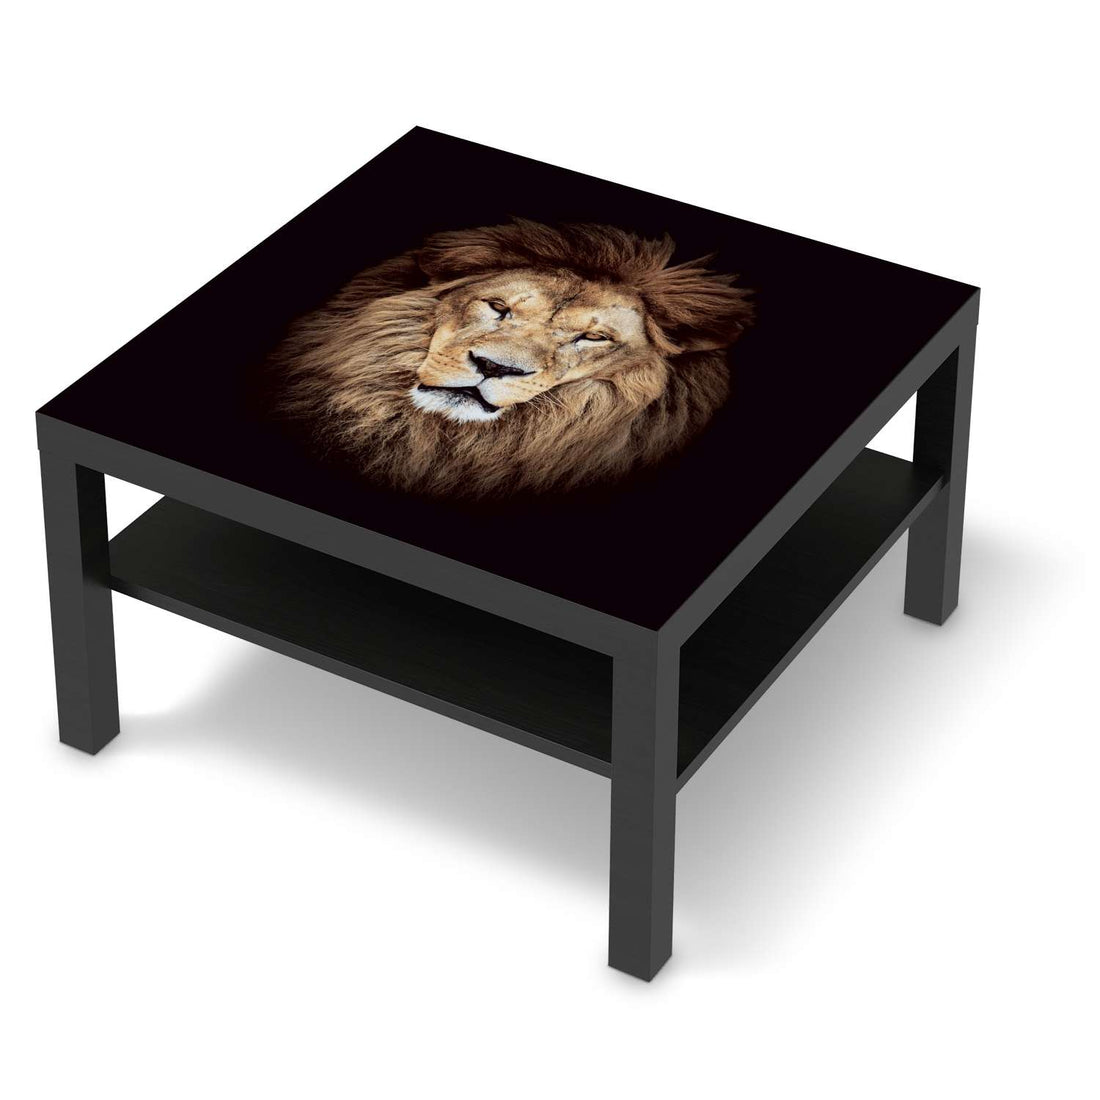 Selbstklebende Folie Wild Eyes - IKEA Lack Tisch 78x78 cm - schwarz